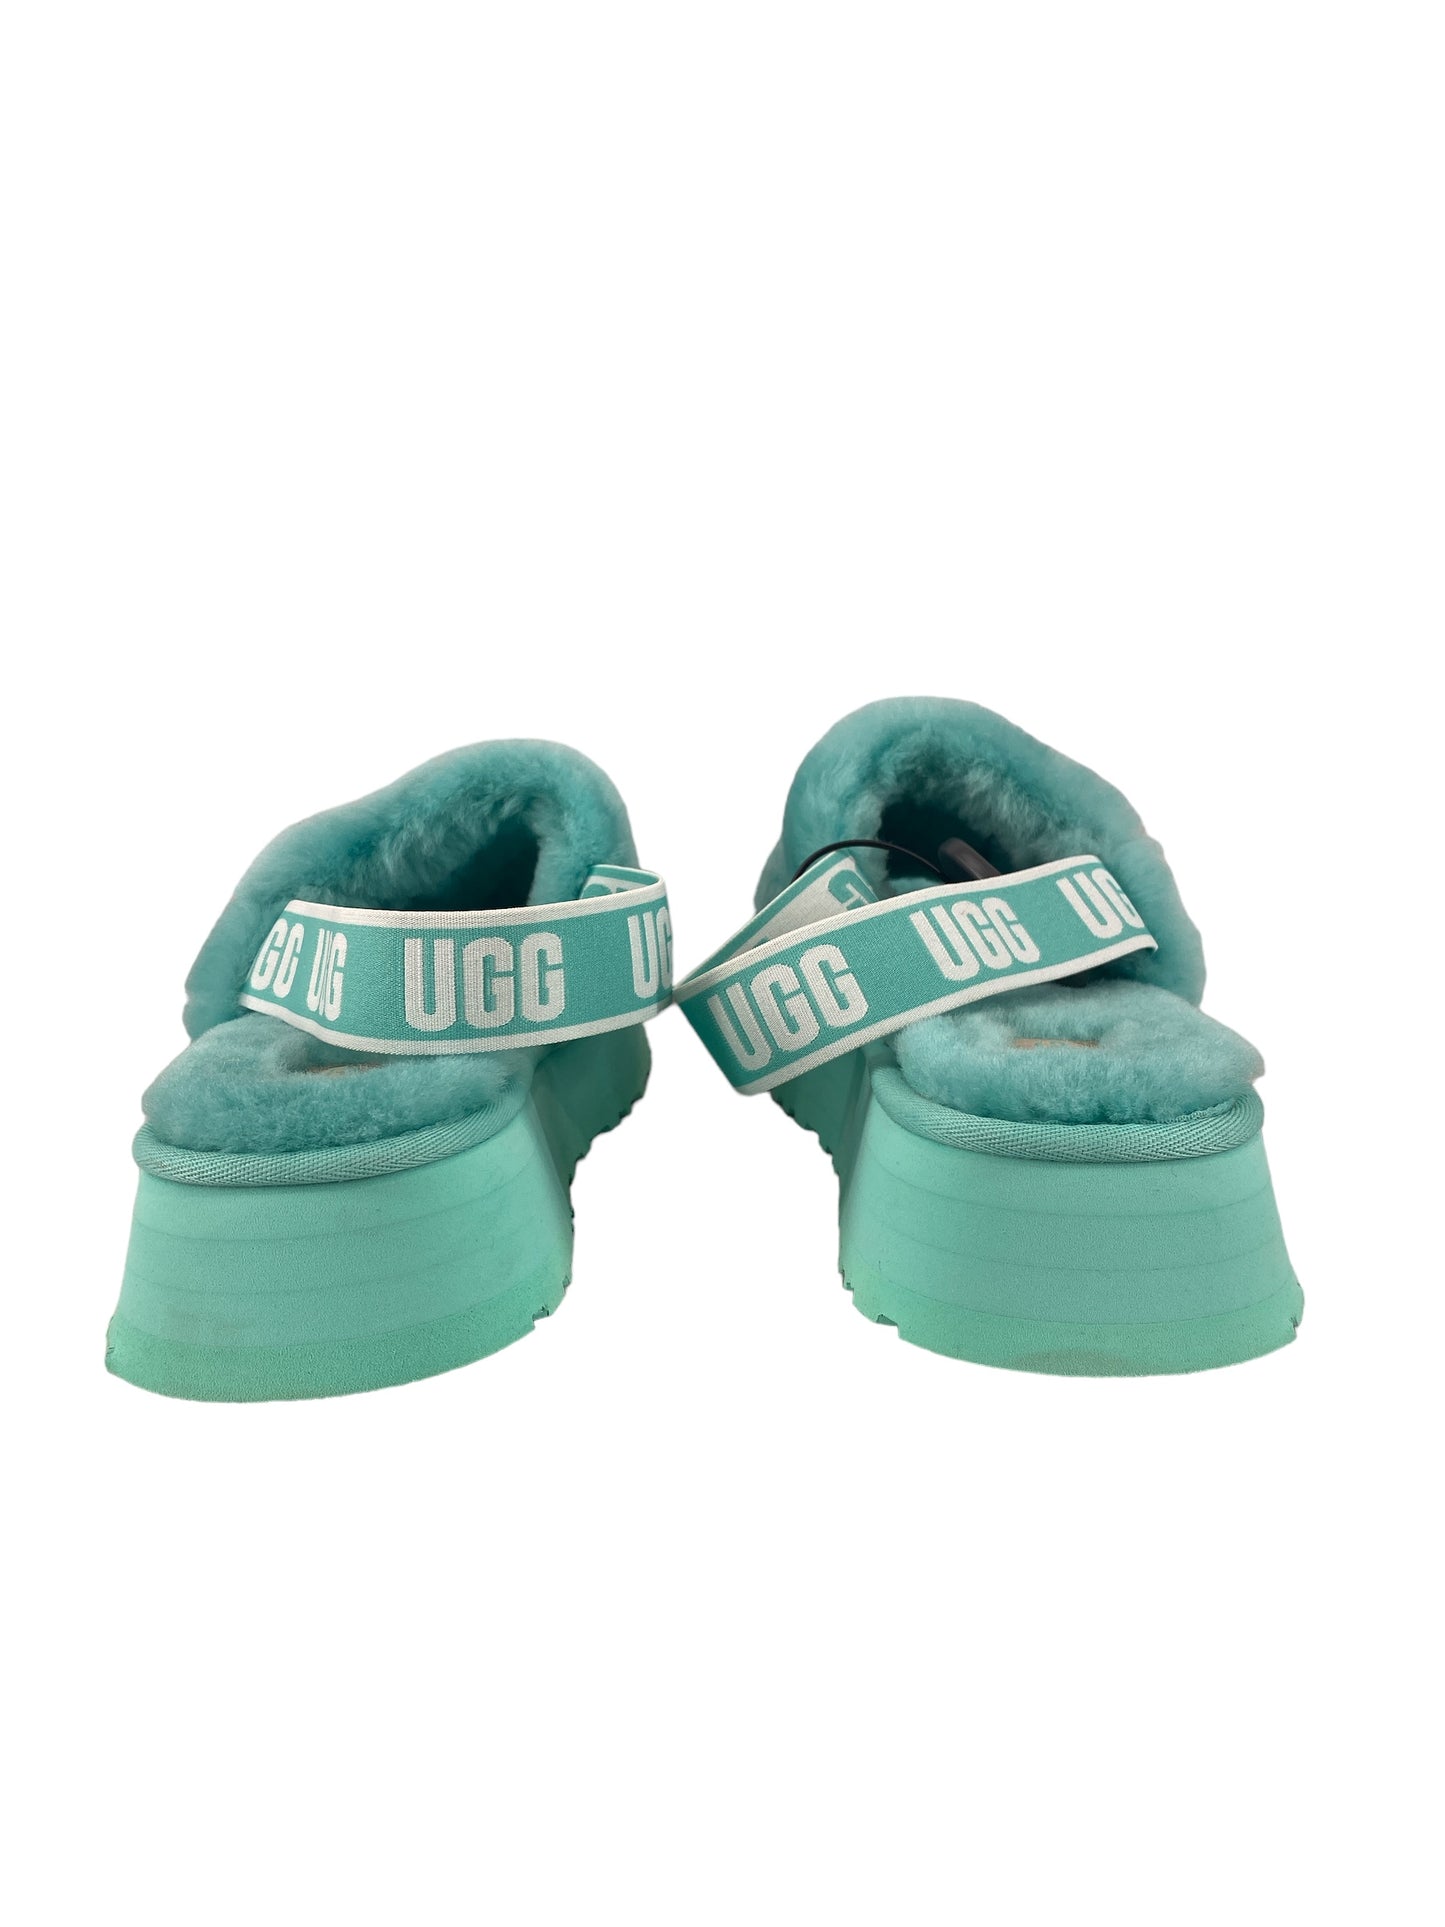 Sandals Designer By Ugg  Size: 11